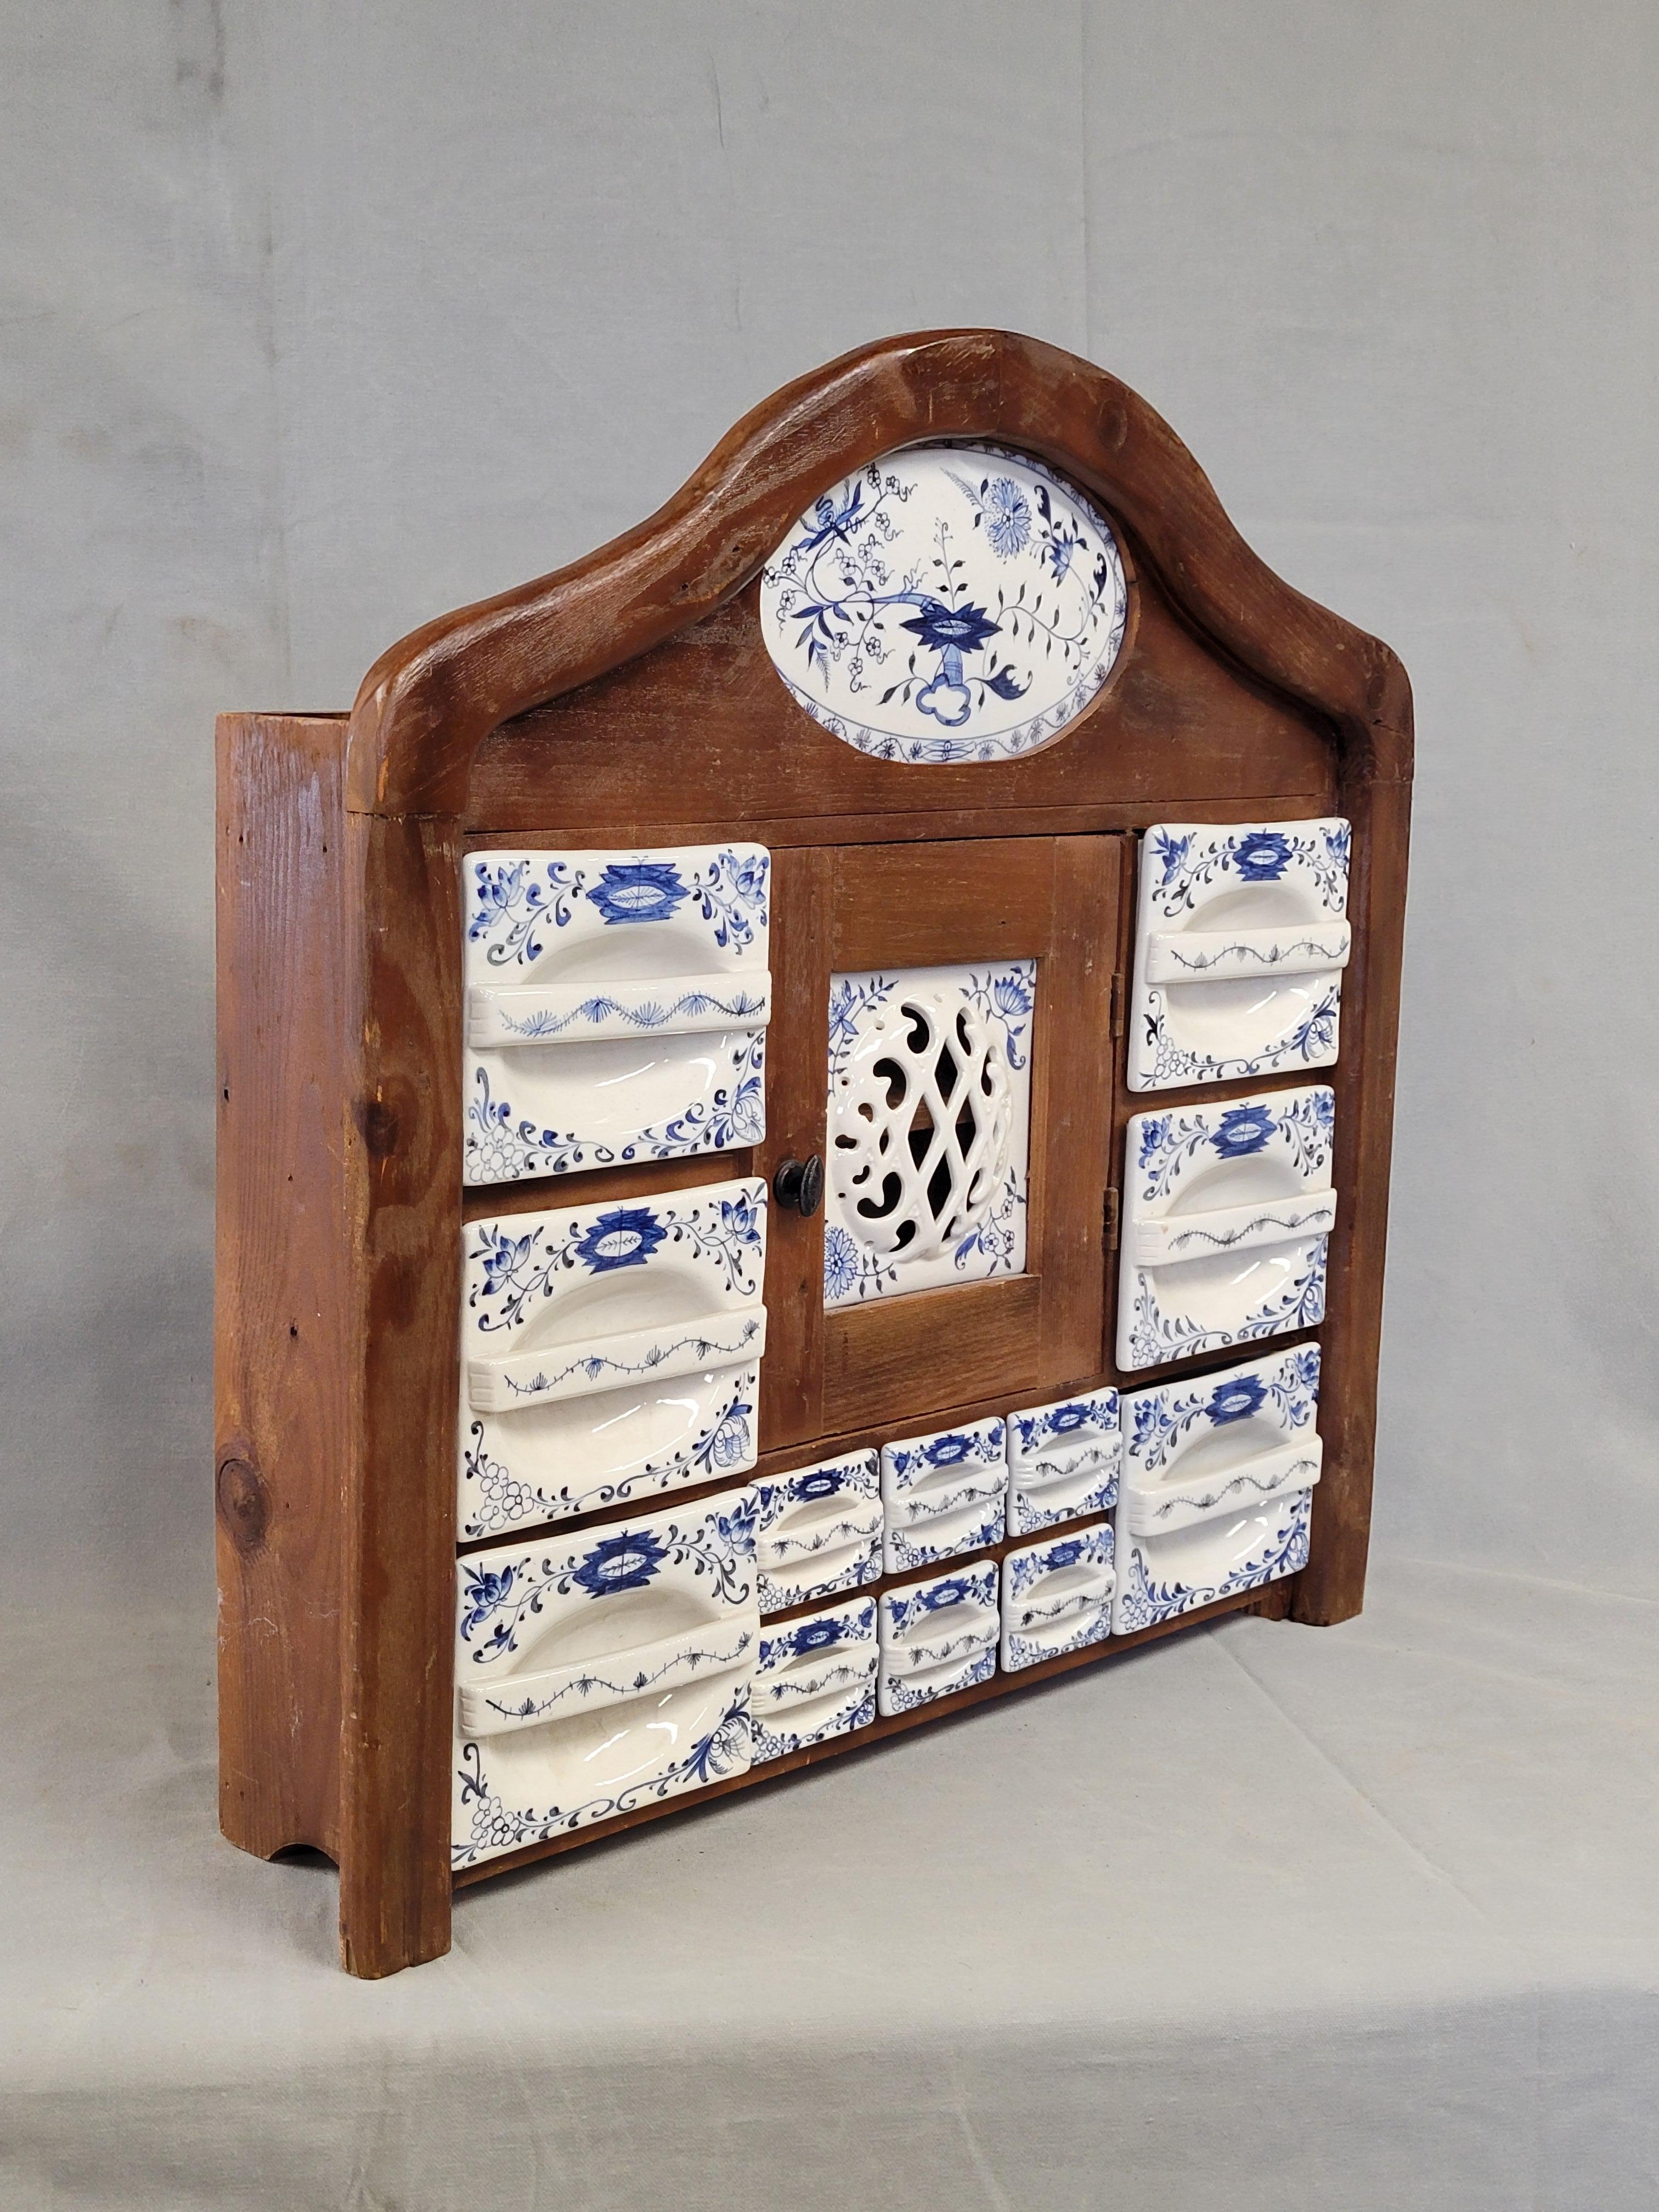 Ein charmantes holländisches Vintage-Küchengewürzregal aus Holz mit blau-weißen (blaues Zwiebelmuster) Schubladeneinsätzen aus Keramik. Die Schranktür lässt sich zur Lagerung von Frischeiern öffnen (in Europa werden Frischeier nicht gekühlt). Can an